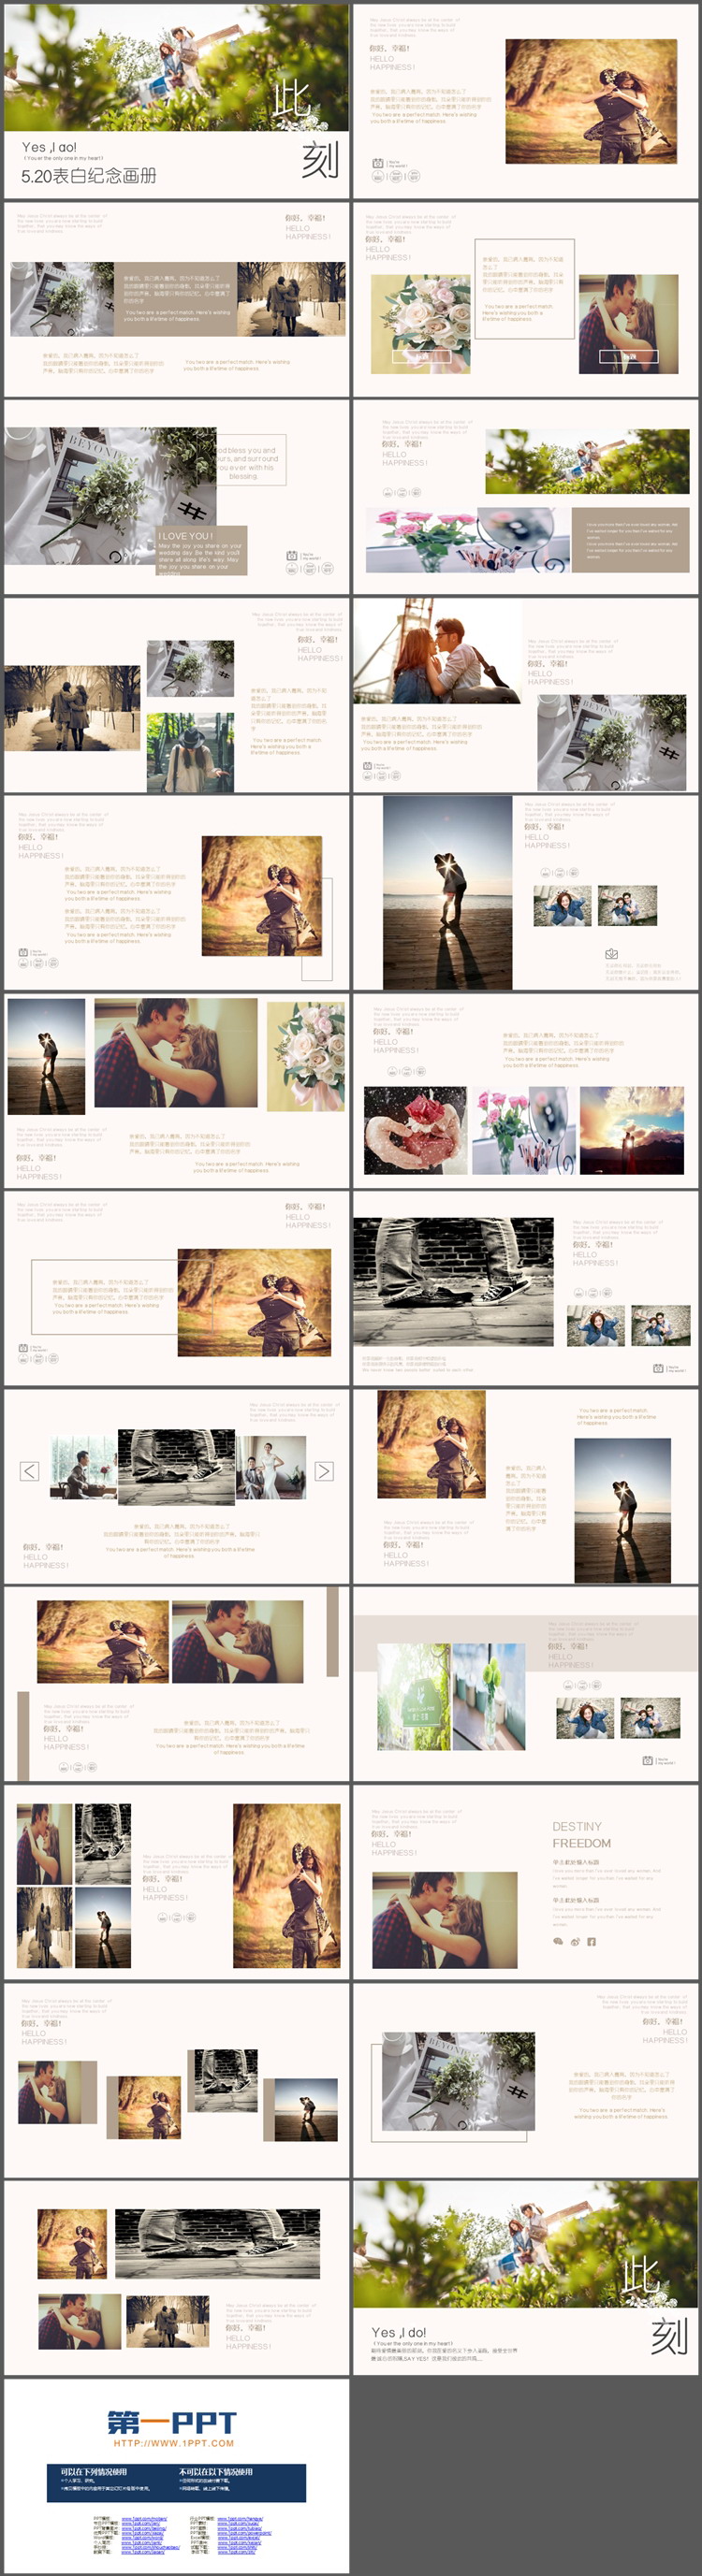 情侣照片背景的情人节表白纪念画册PPT模板